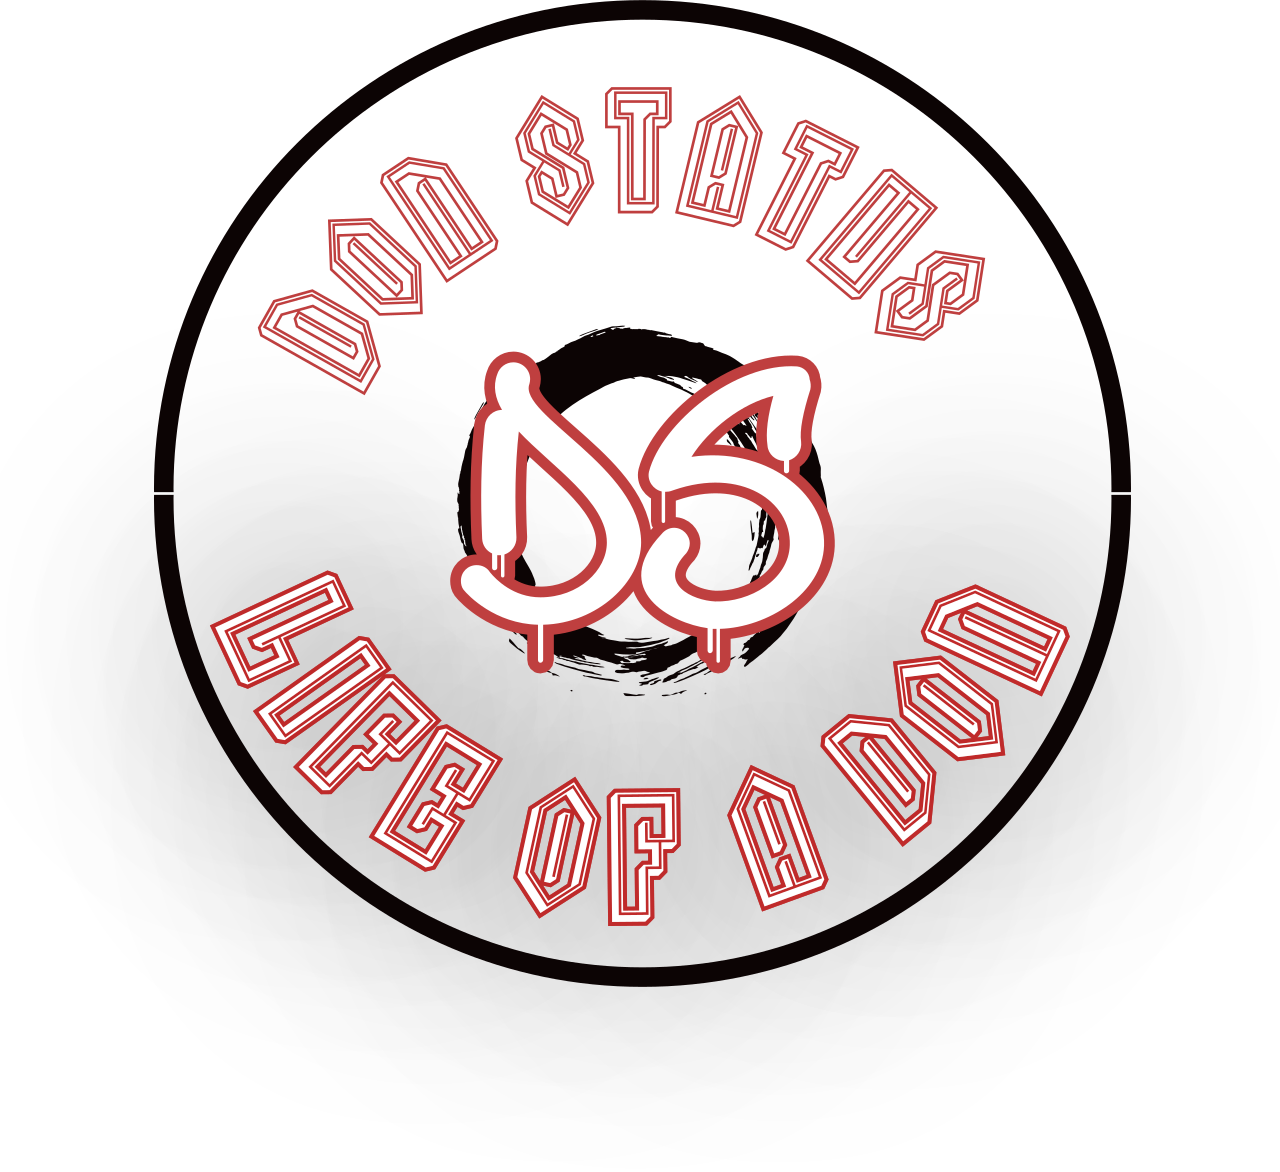 Don Status 's logo